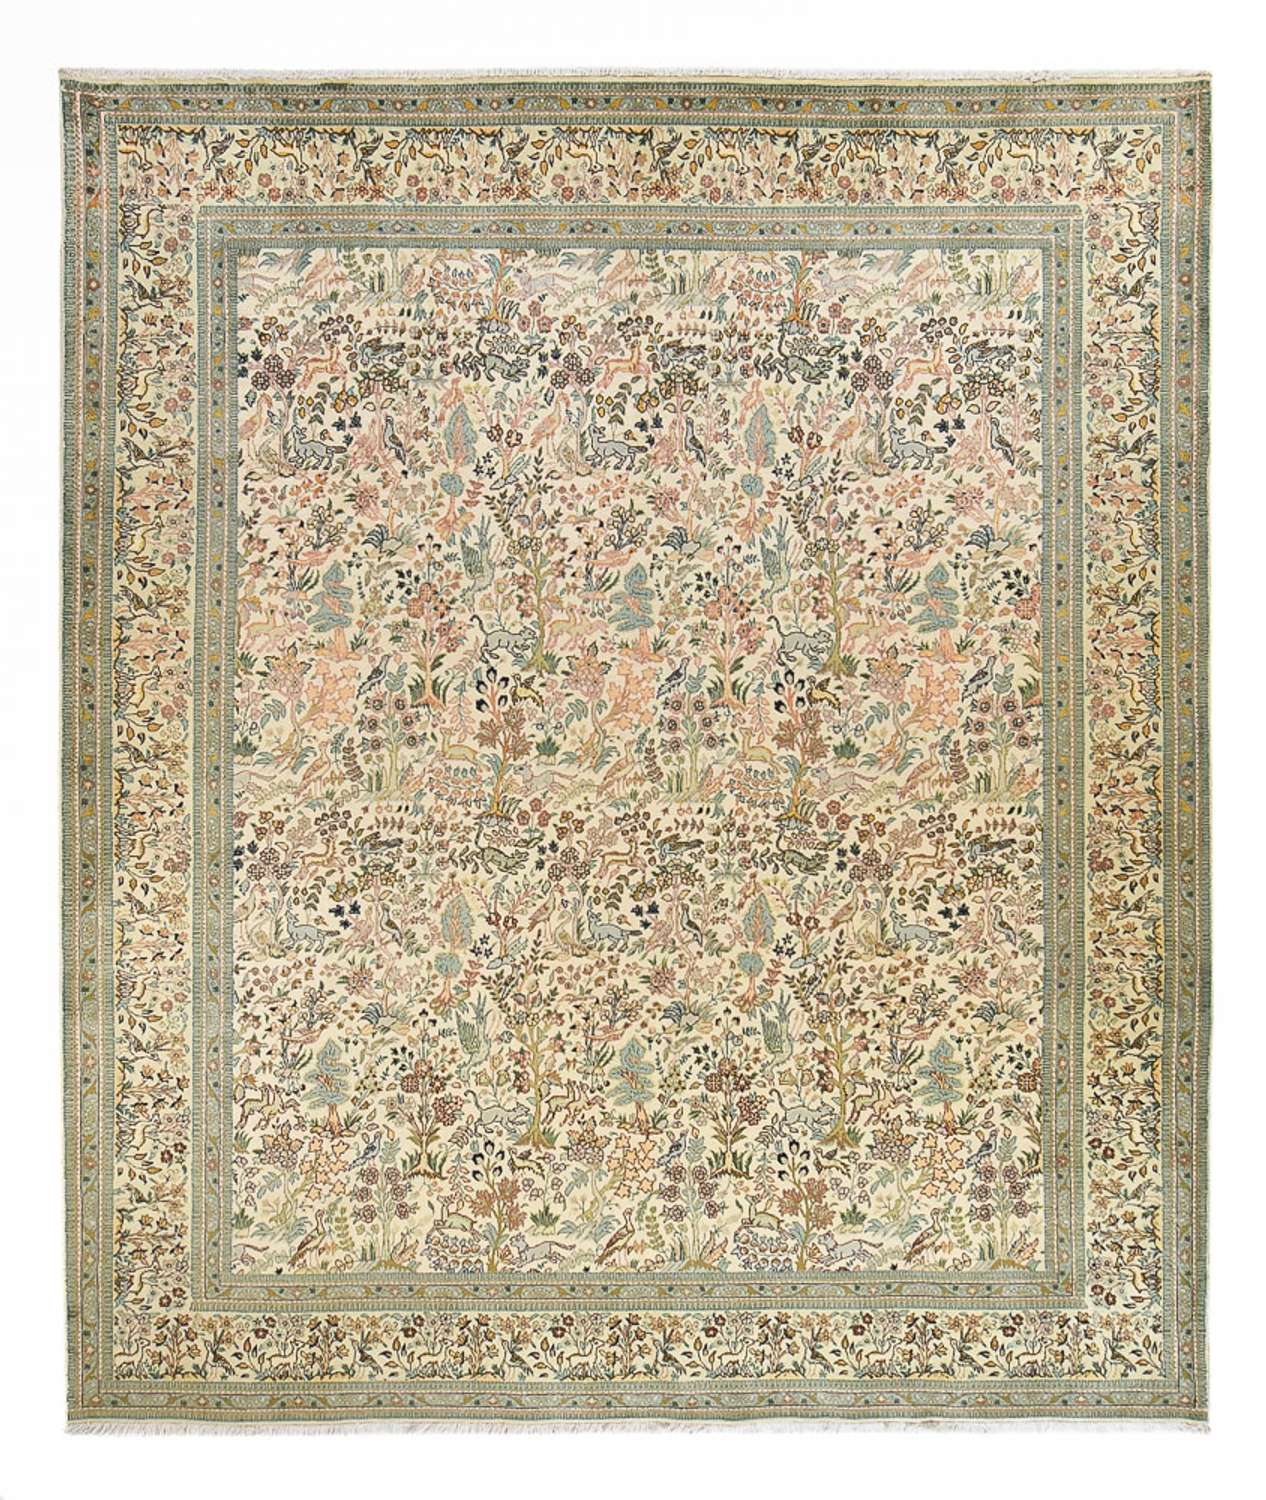 Dywan perski - Klasyczny kształt specjalny  - 365 x 302 cm - jasnozielony